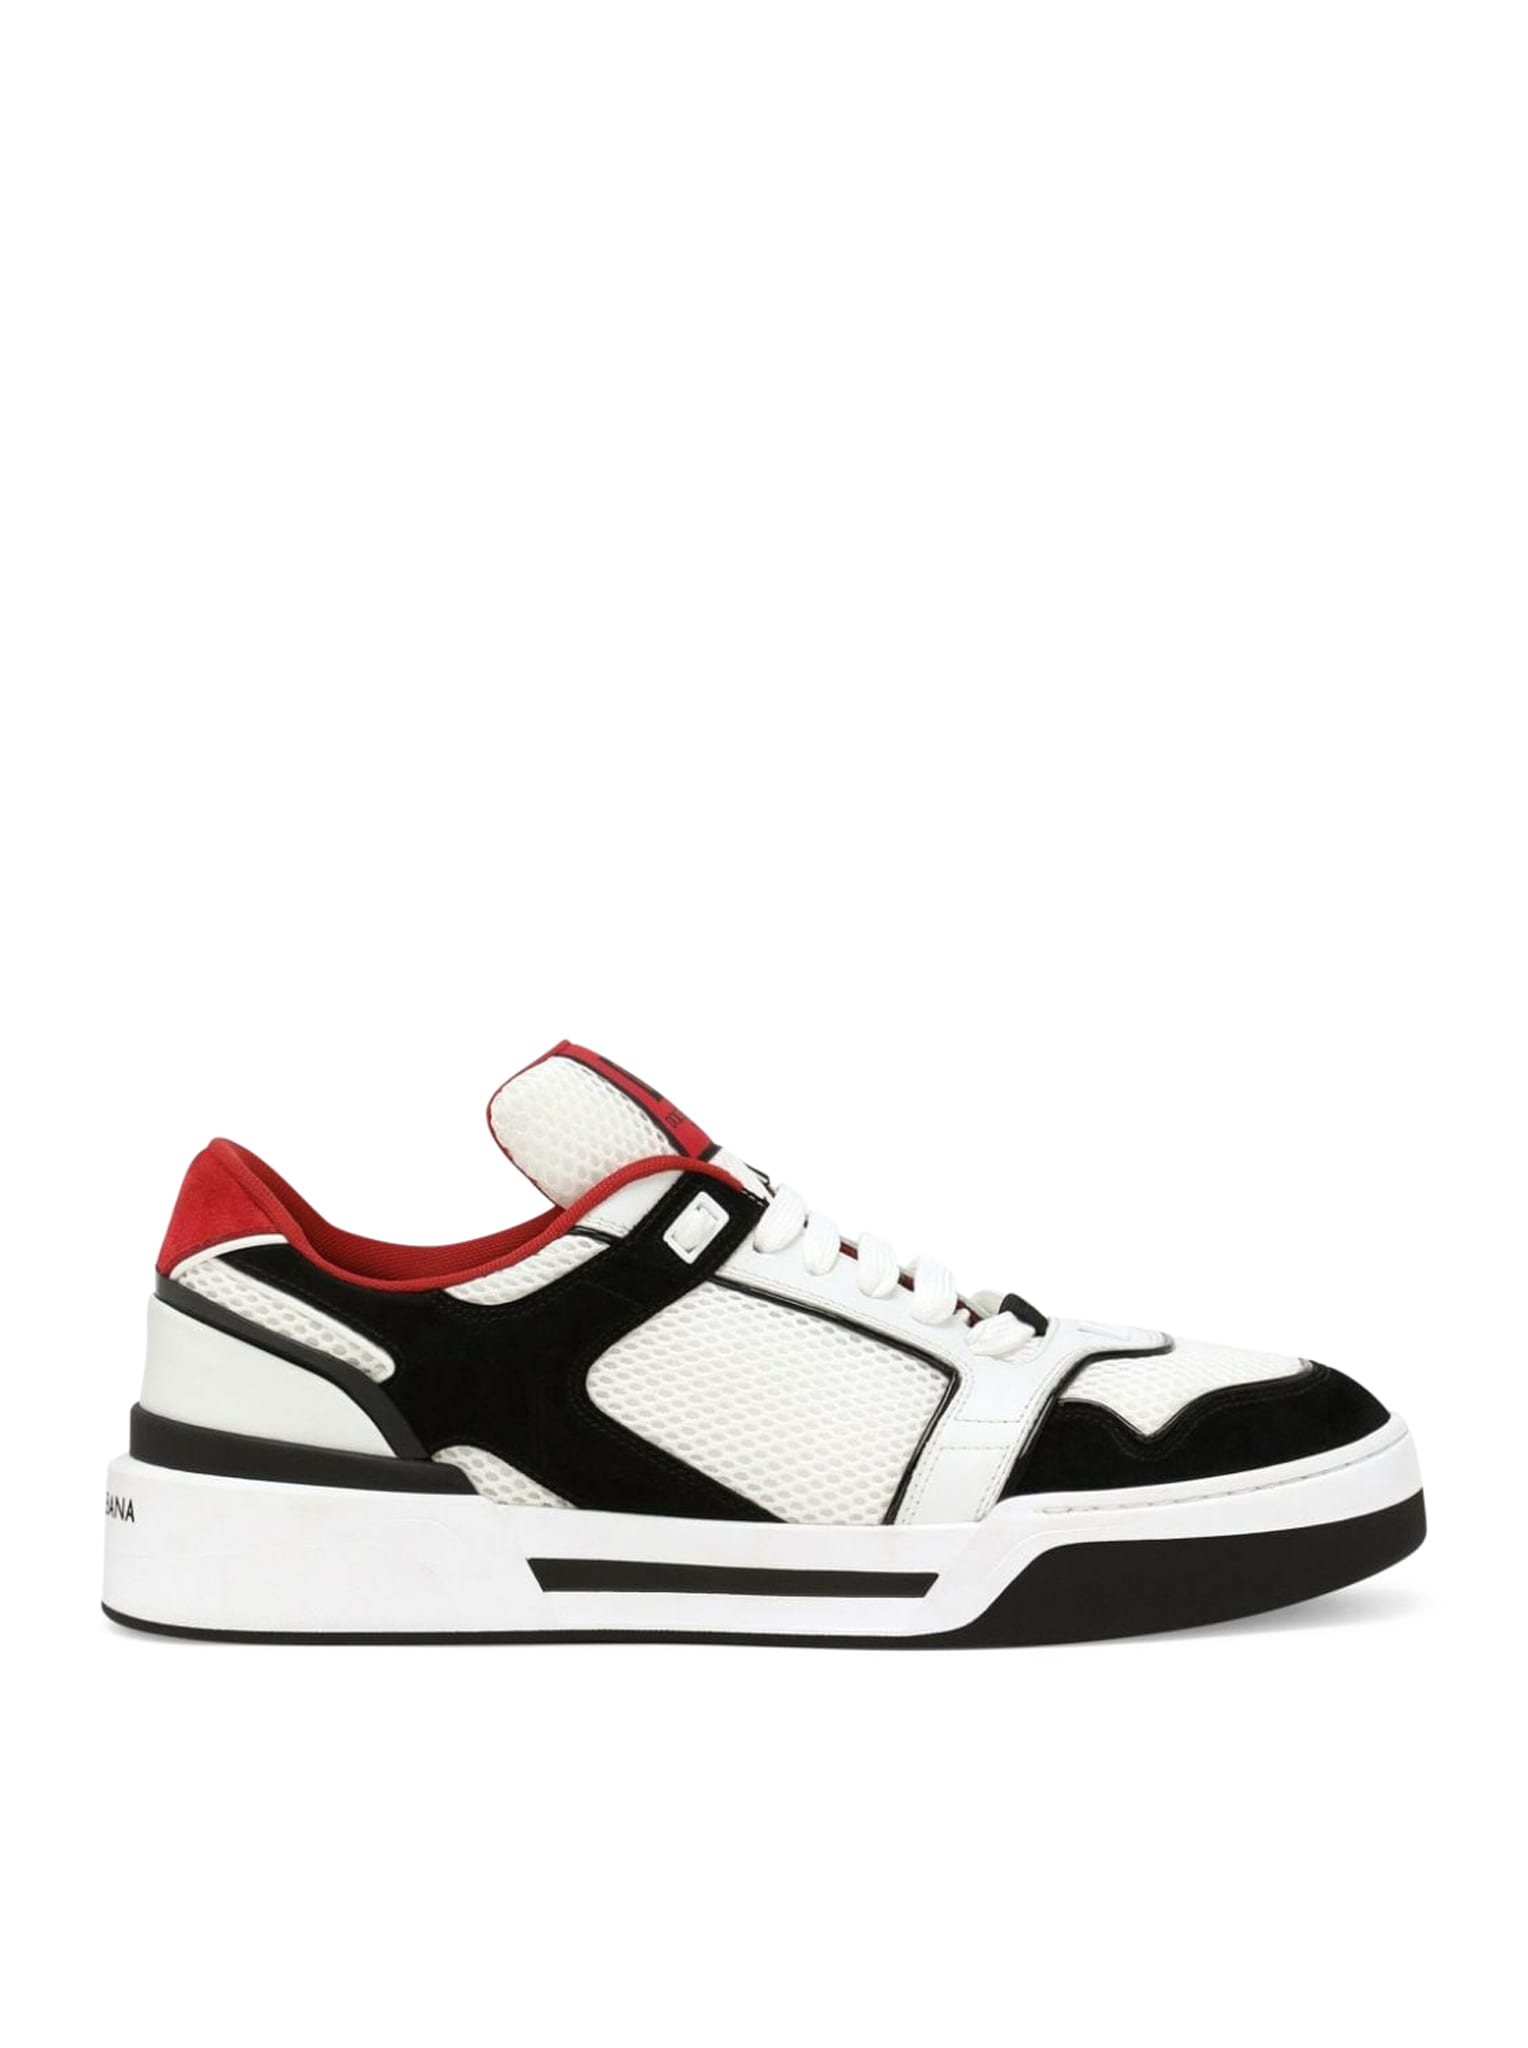 Dolce & Gabbana Sneakers In Black White